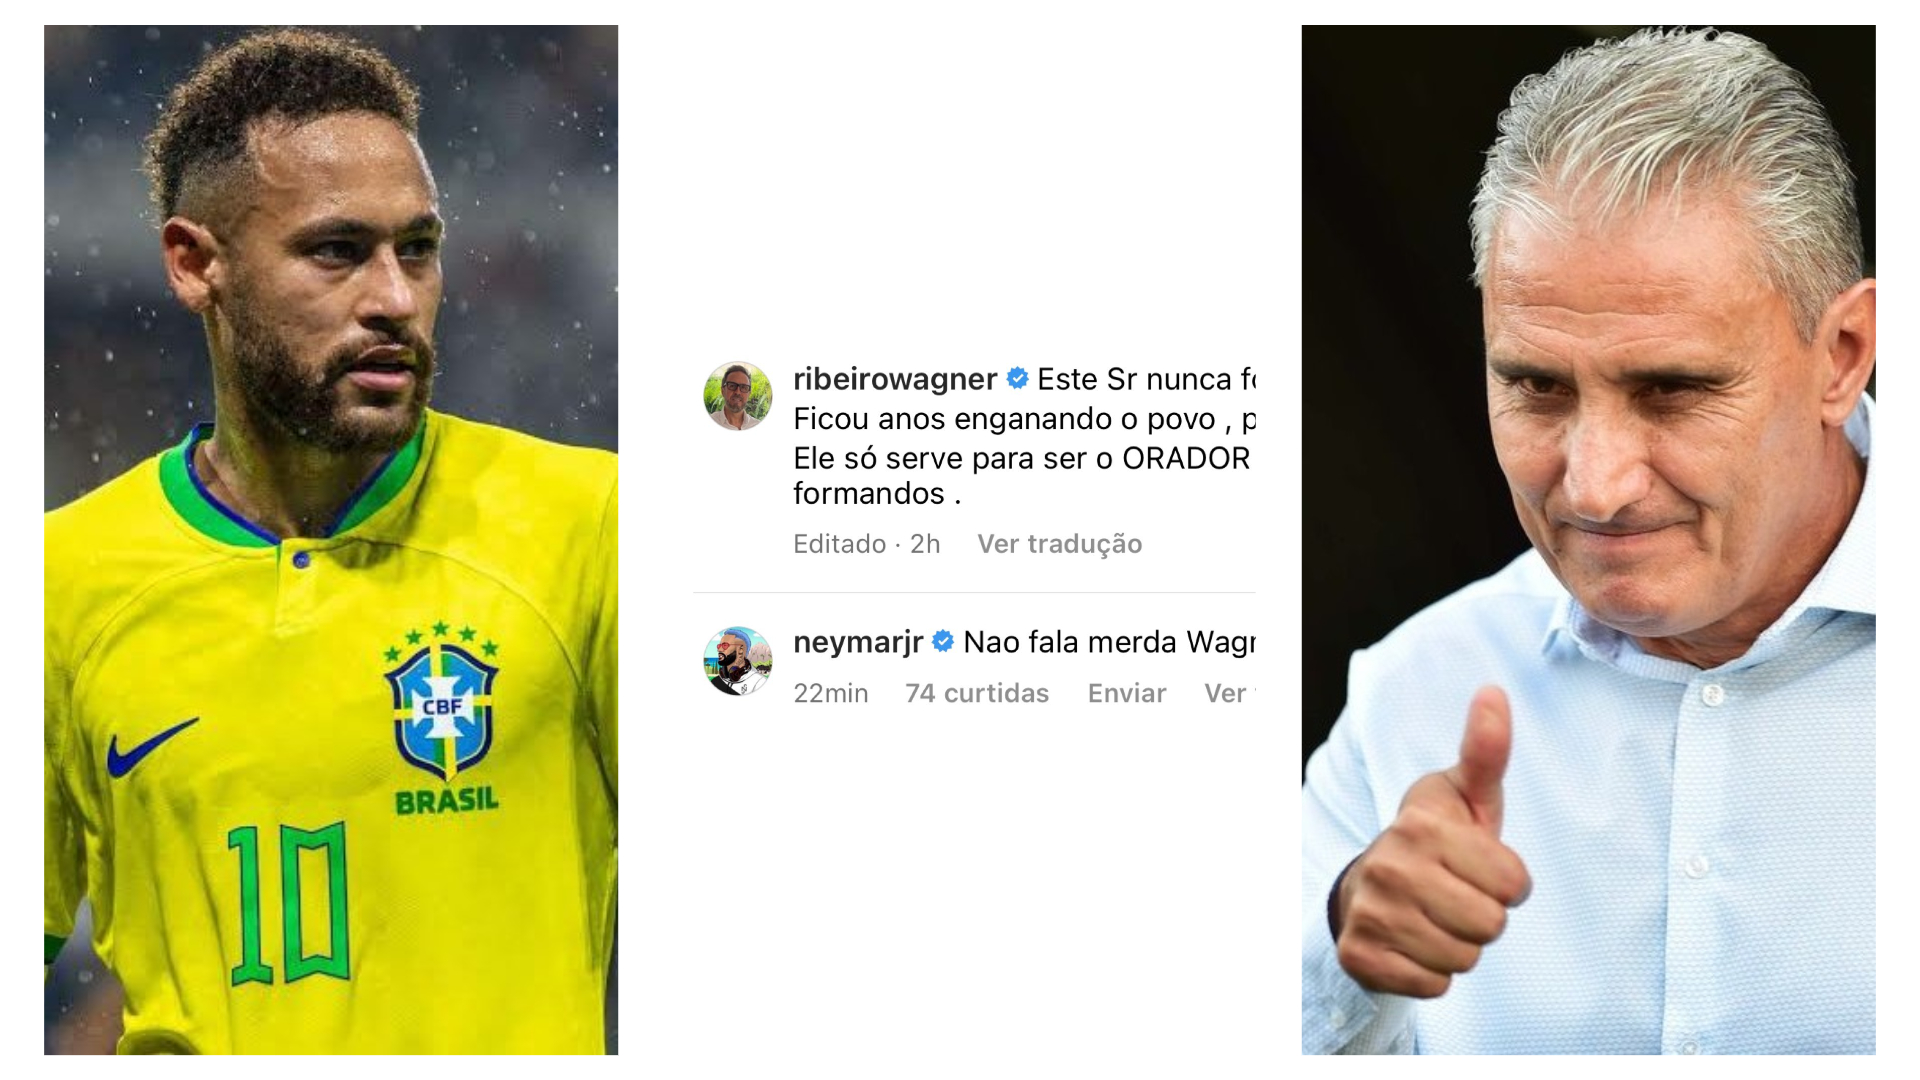 Neymar Tite Bresil agent